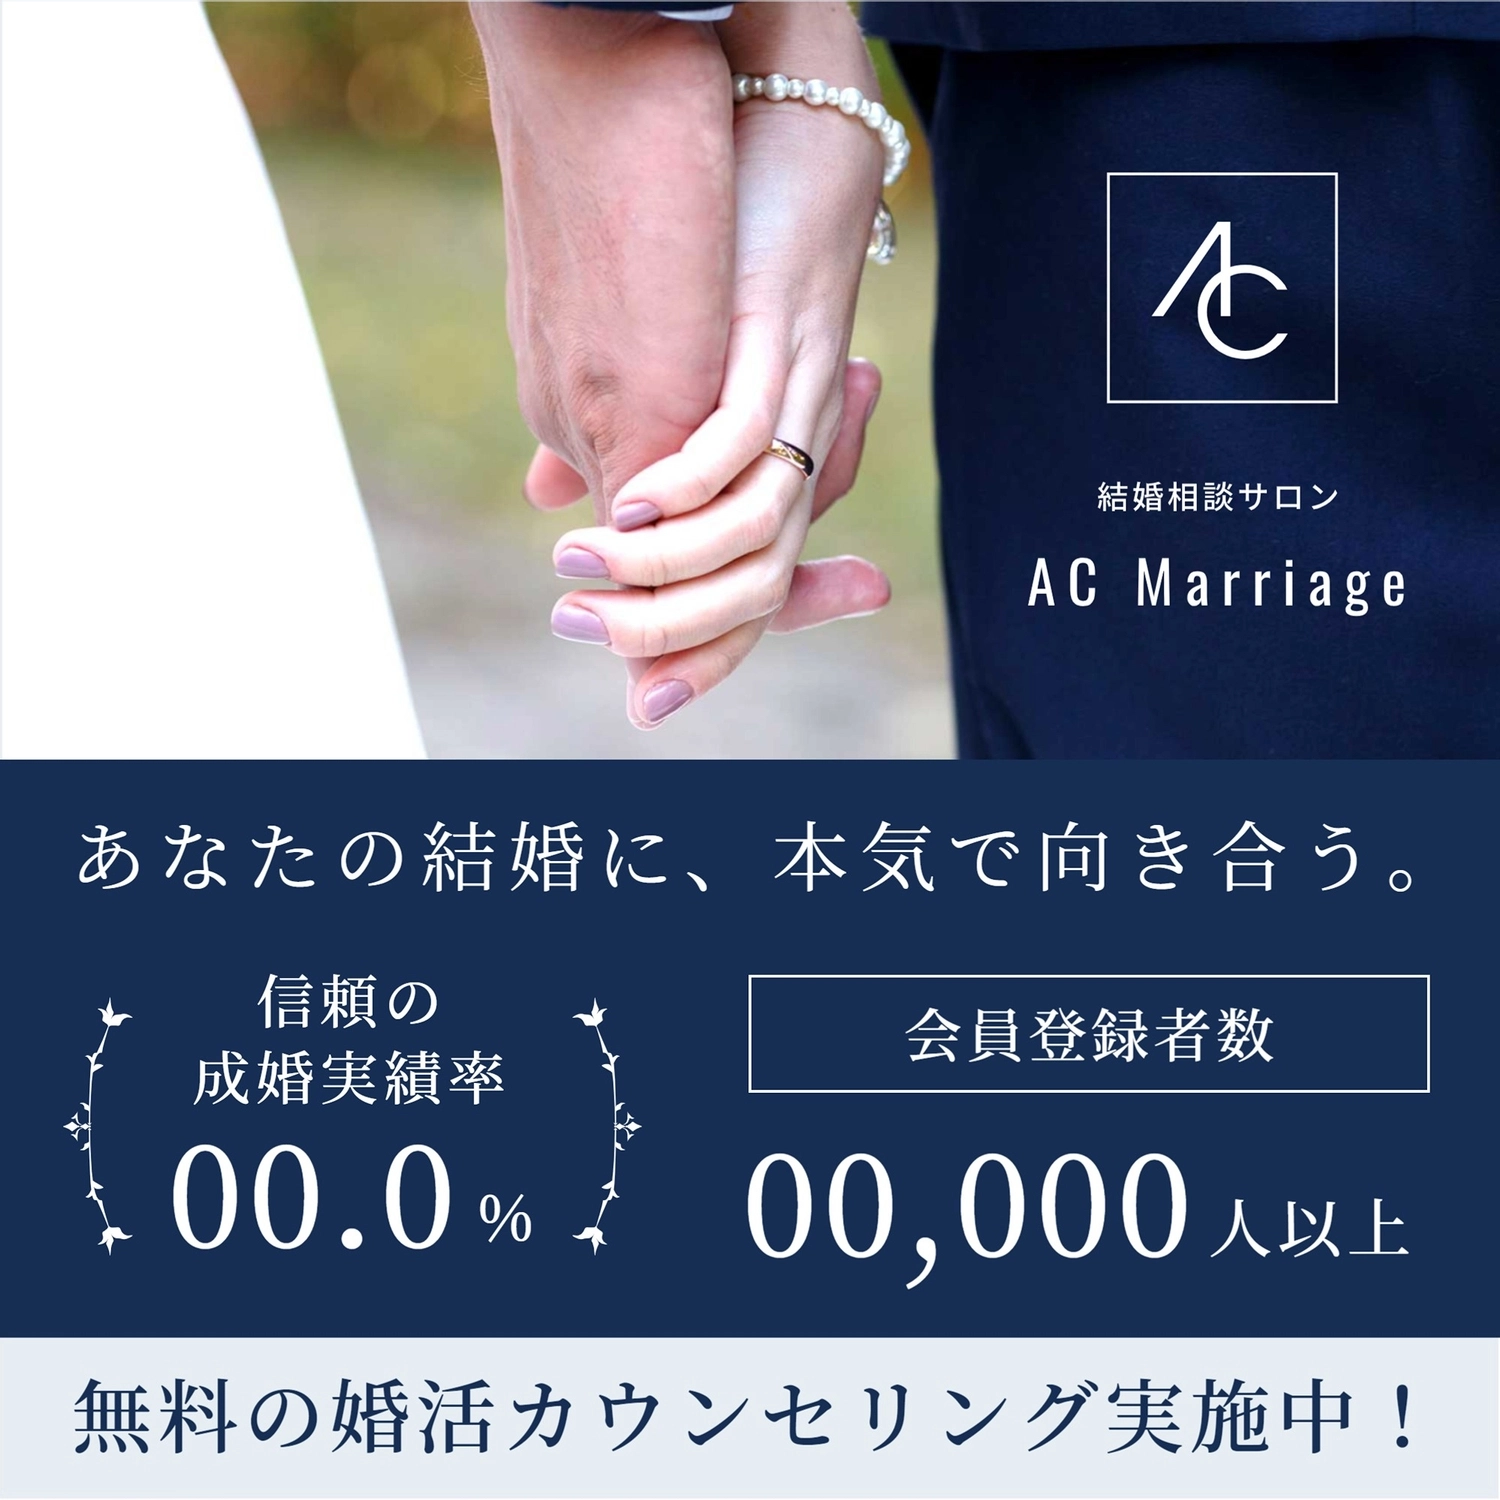 男性と女性の繋いだ手のテンプレート, Instagram 廣告, 婚介, 婚姻, IG廣告 模板